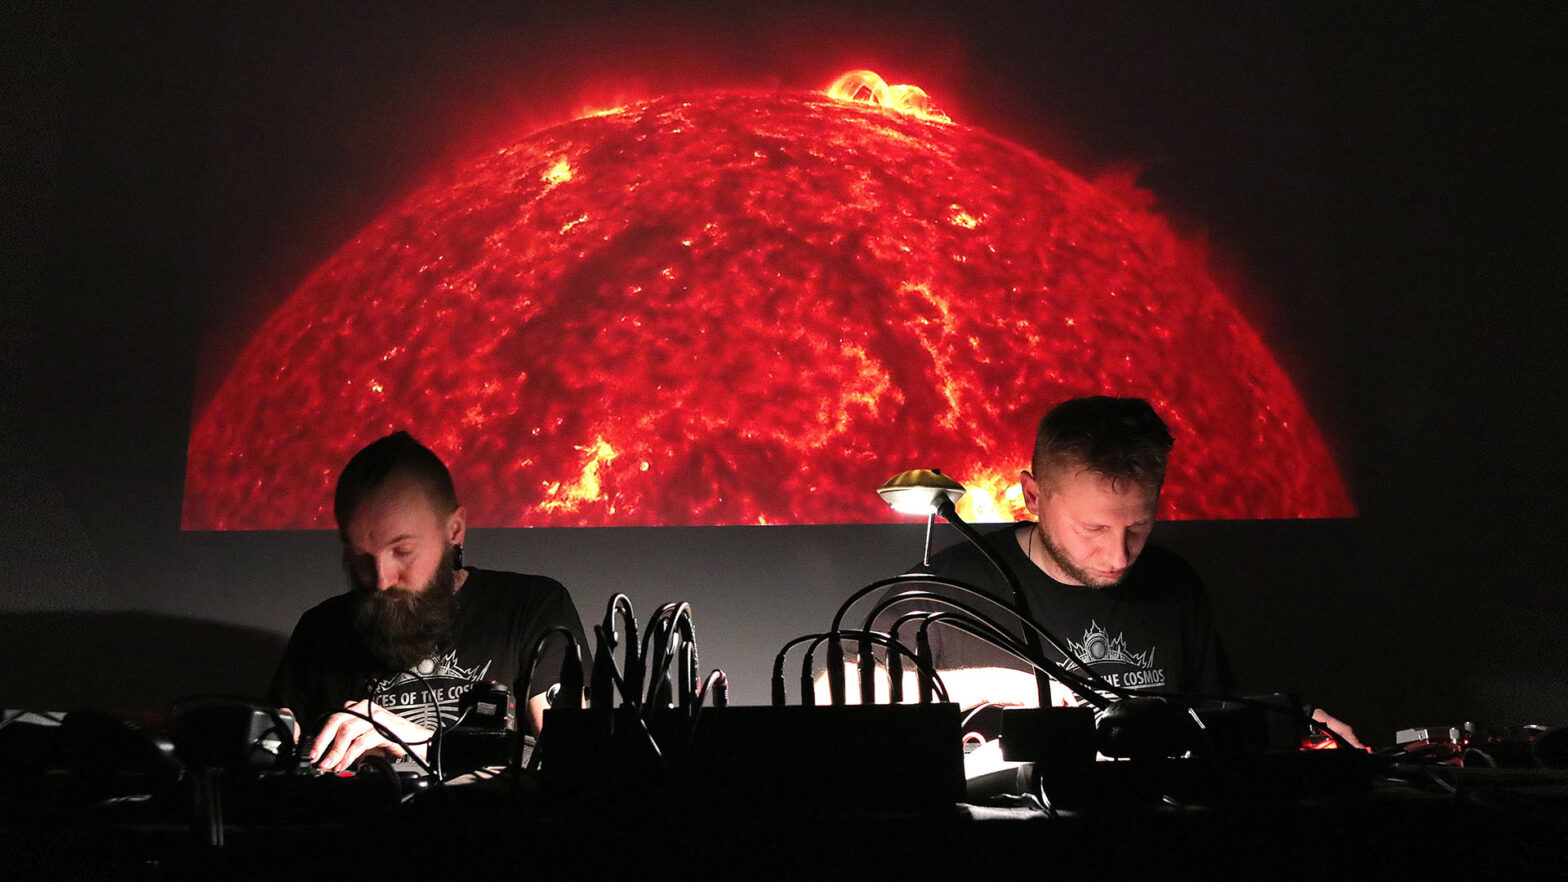 Muzycy podczas koncertu. Dwaj mężczyźni w skupieniu operują instrumentami elektronicznymi. W tle zdjęcie framgmentu Słońca z widocznym wyrzutem plazmy.